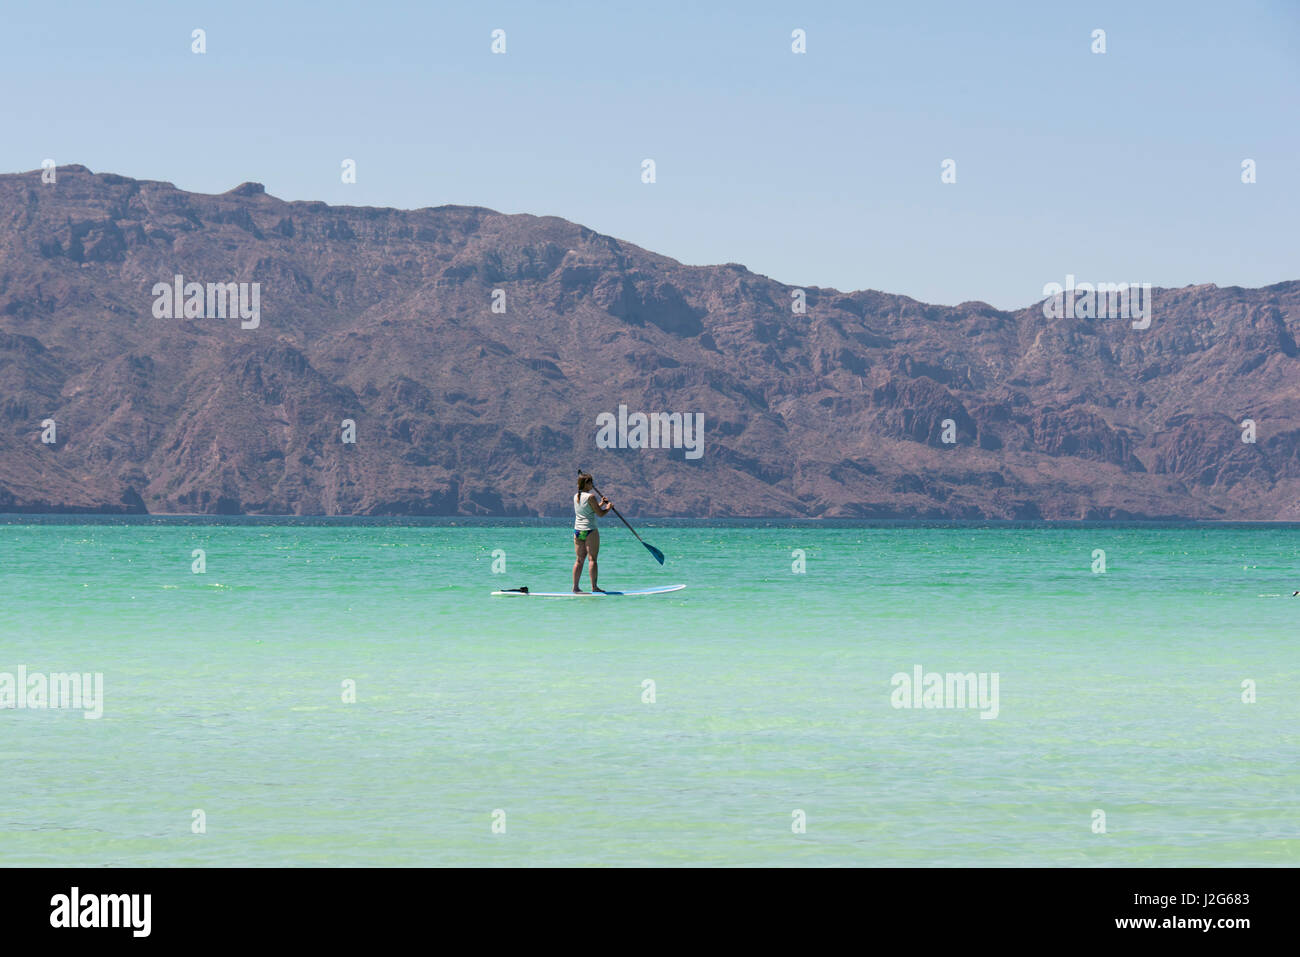 Mexico, Baja California Sur, Sea of Cortez. Paddleboarder in calm waters off Isla Coronado Stock Photo